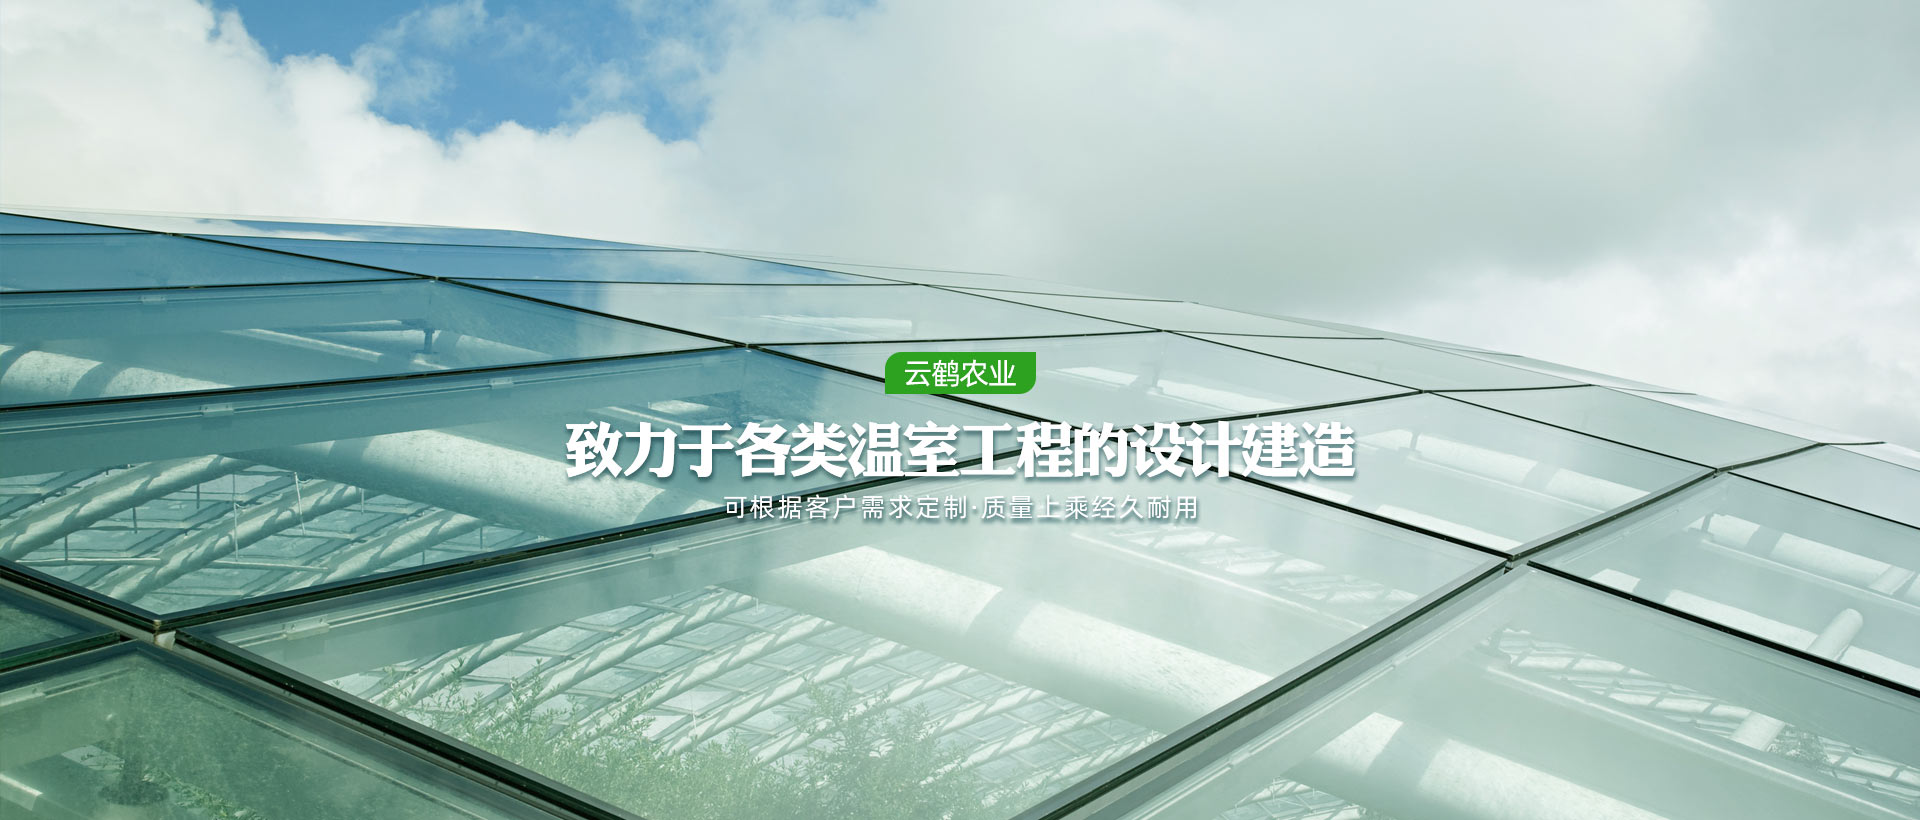 玻璃大棚、日光溫室、溫室骨架、現代農業溫室大棚、薄膜連棟、現代農業溫室大棚、溫室骨架 